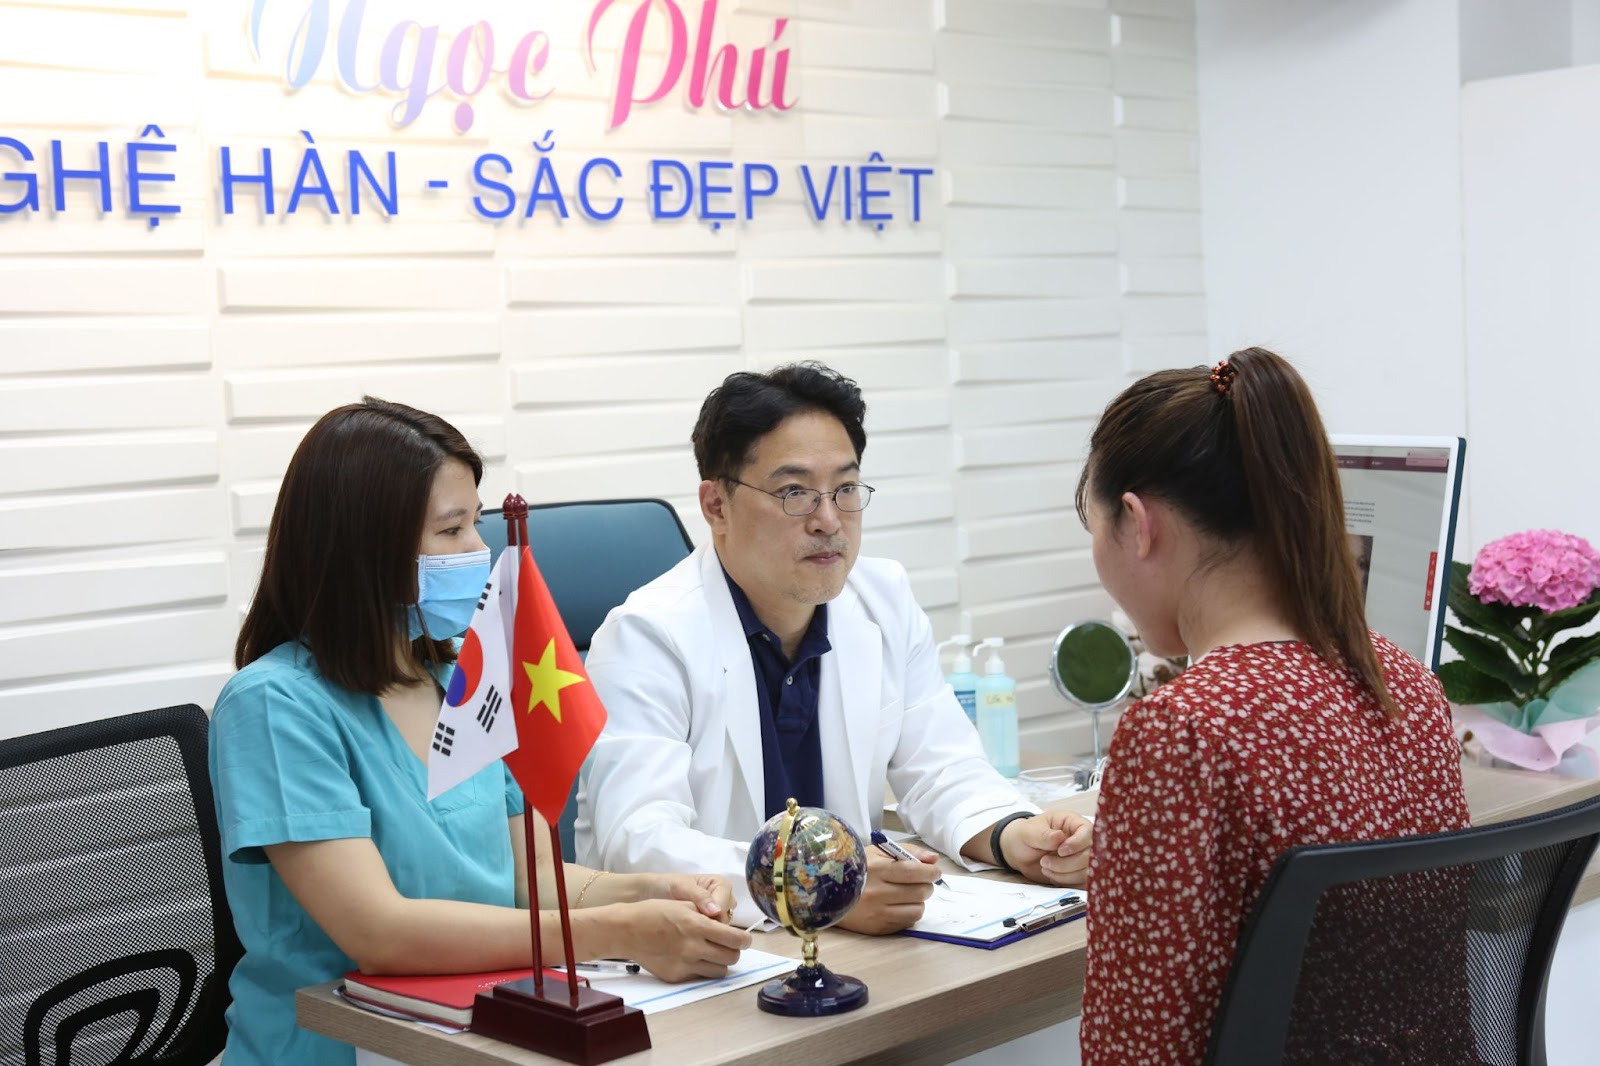 Hiểu được mong muốn làm đẹp với bác sĩ Hàn cùng công nghệ Hàn Quốc, Bệnh viện Thẩm mỹ Ngọc Phú đã hợp tác cùng Giáo sư/Bác sĩ Lee Jung Hoon - Viện trưởng Viện giải phẫu thẩm mỹ NU-Seoul Hàn Quốc